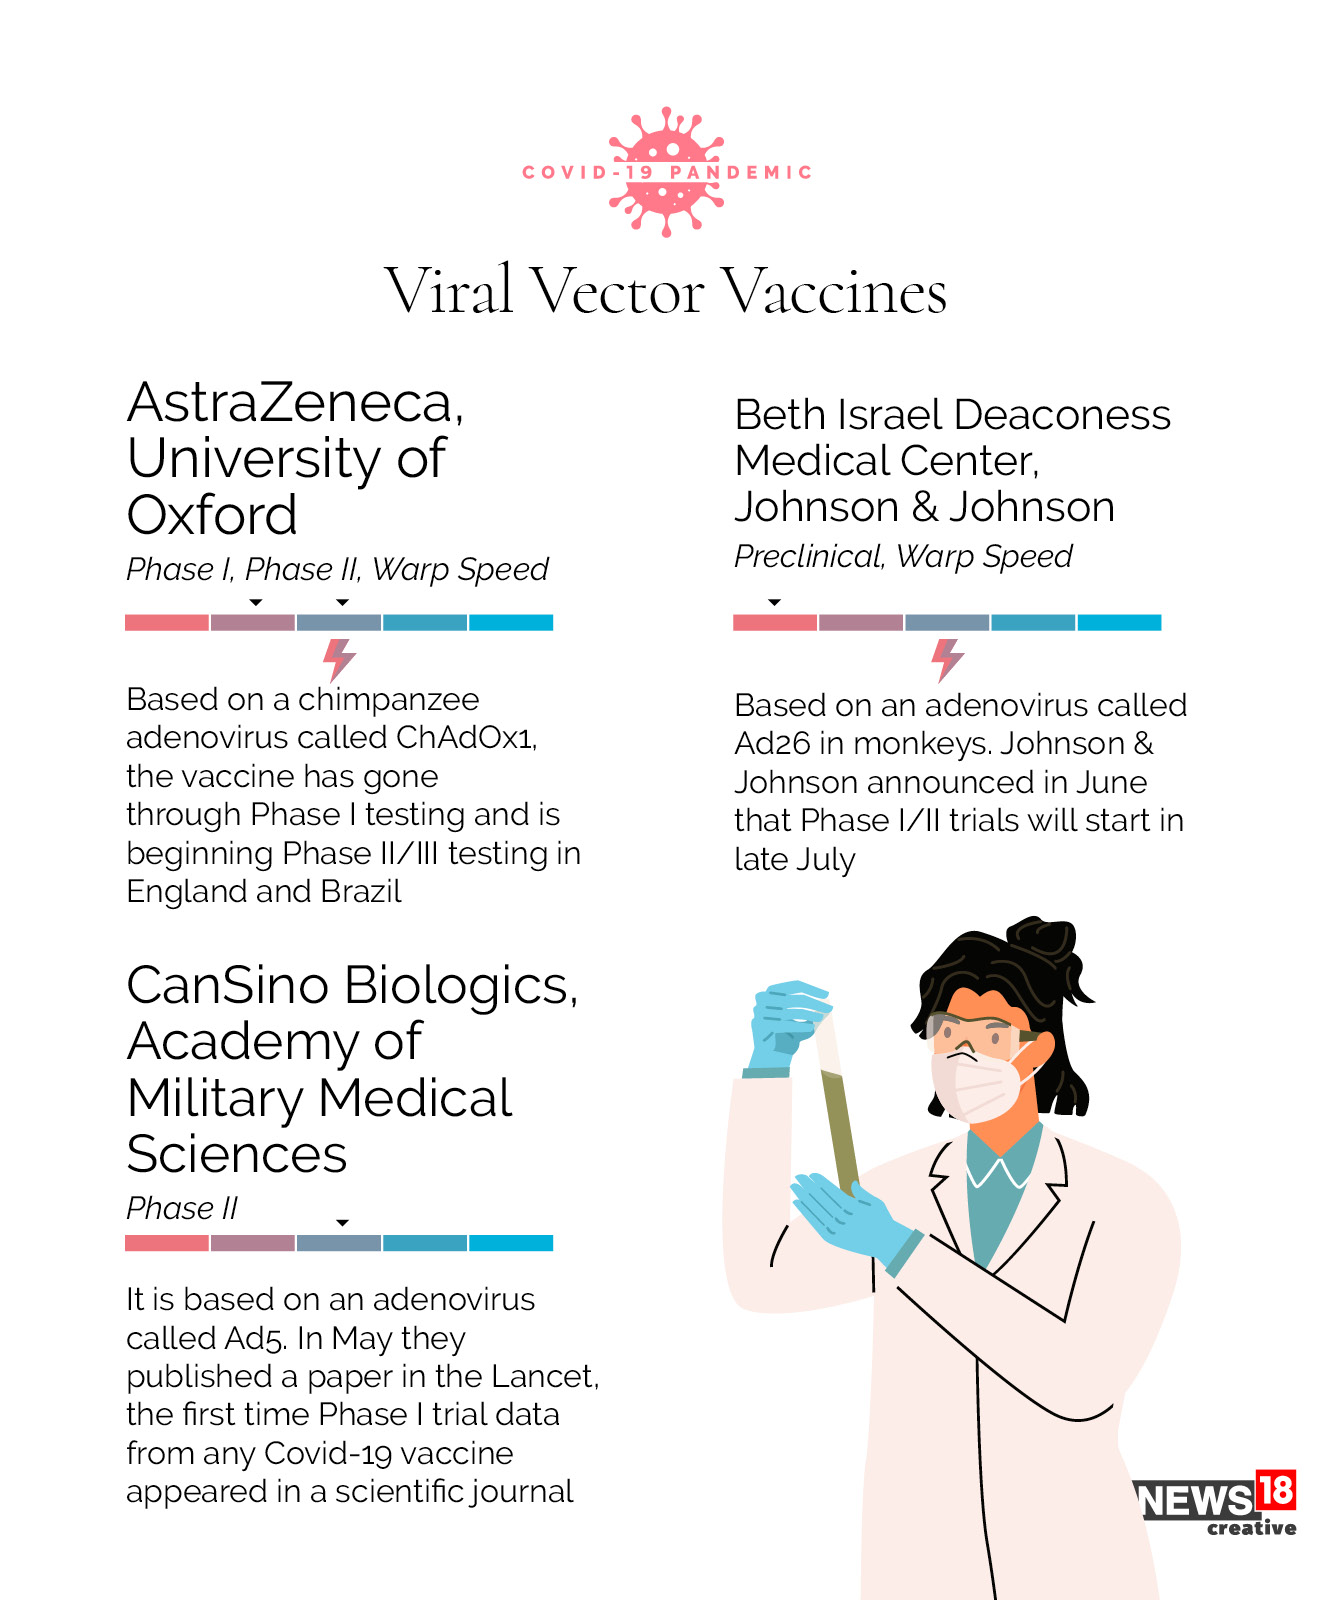 Coronavirus vaccine: Where are we now?